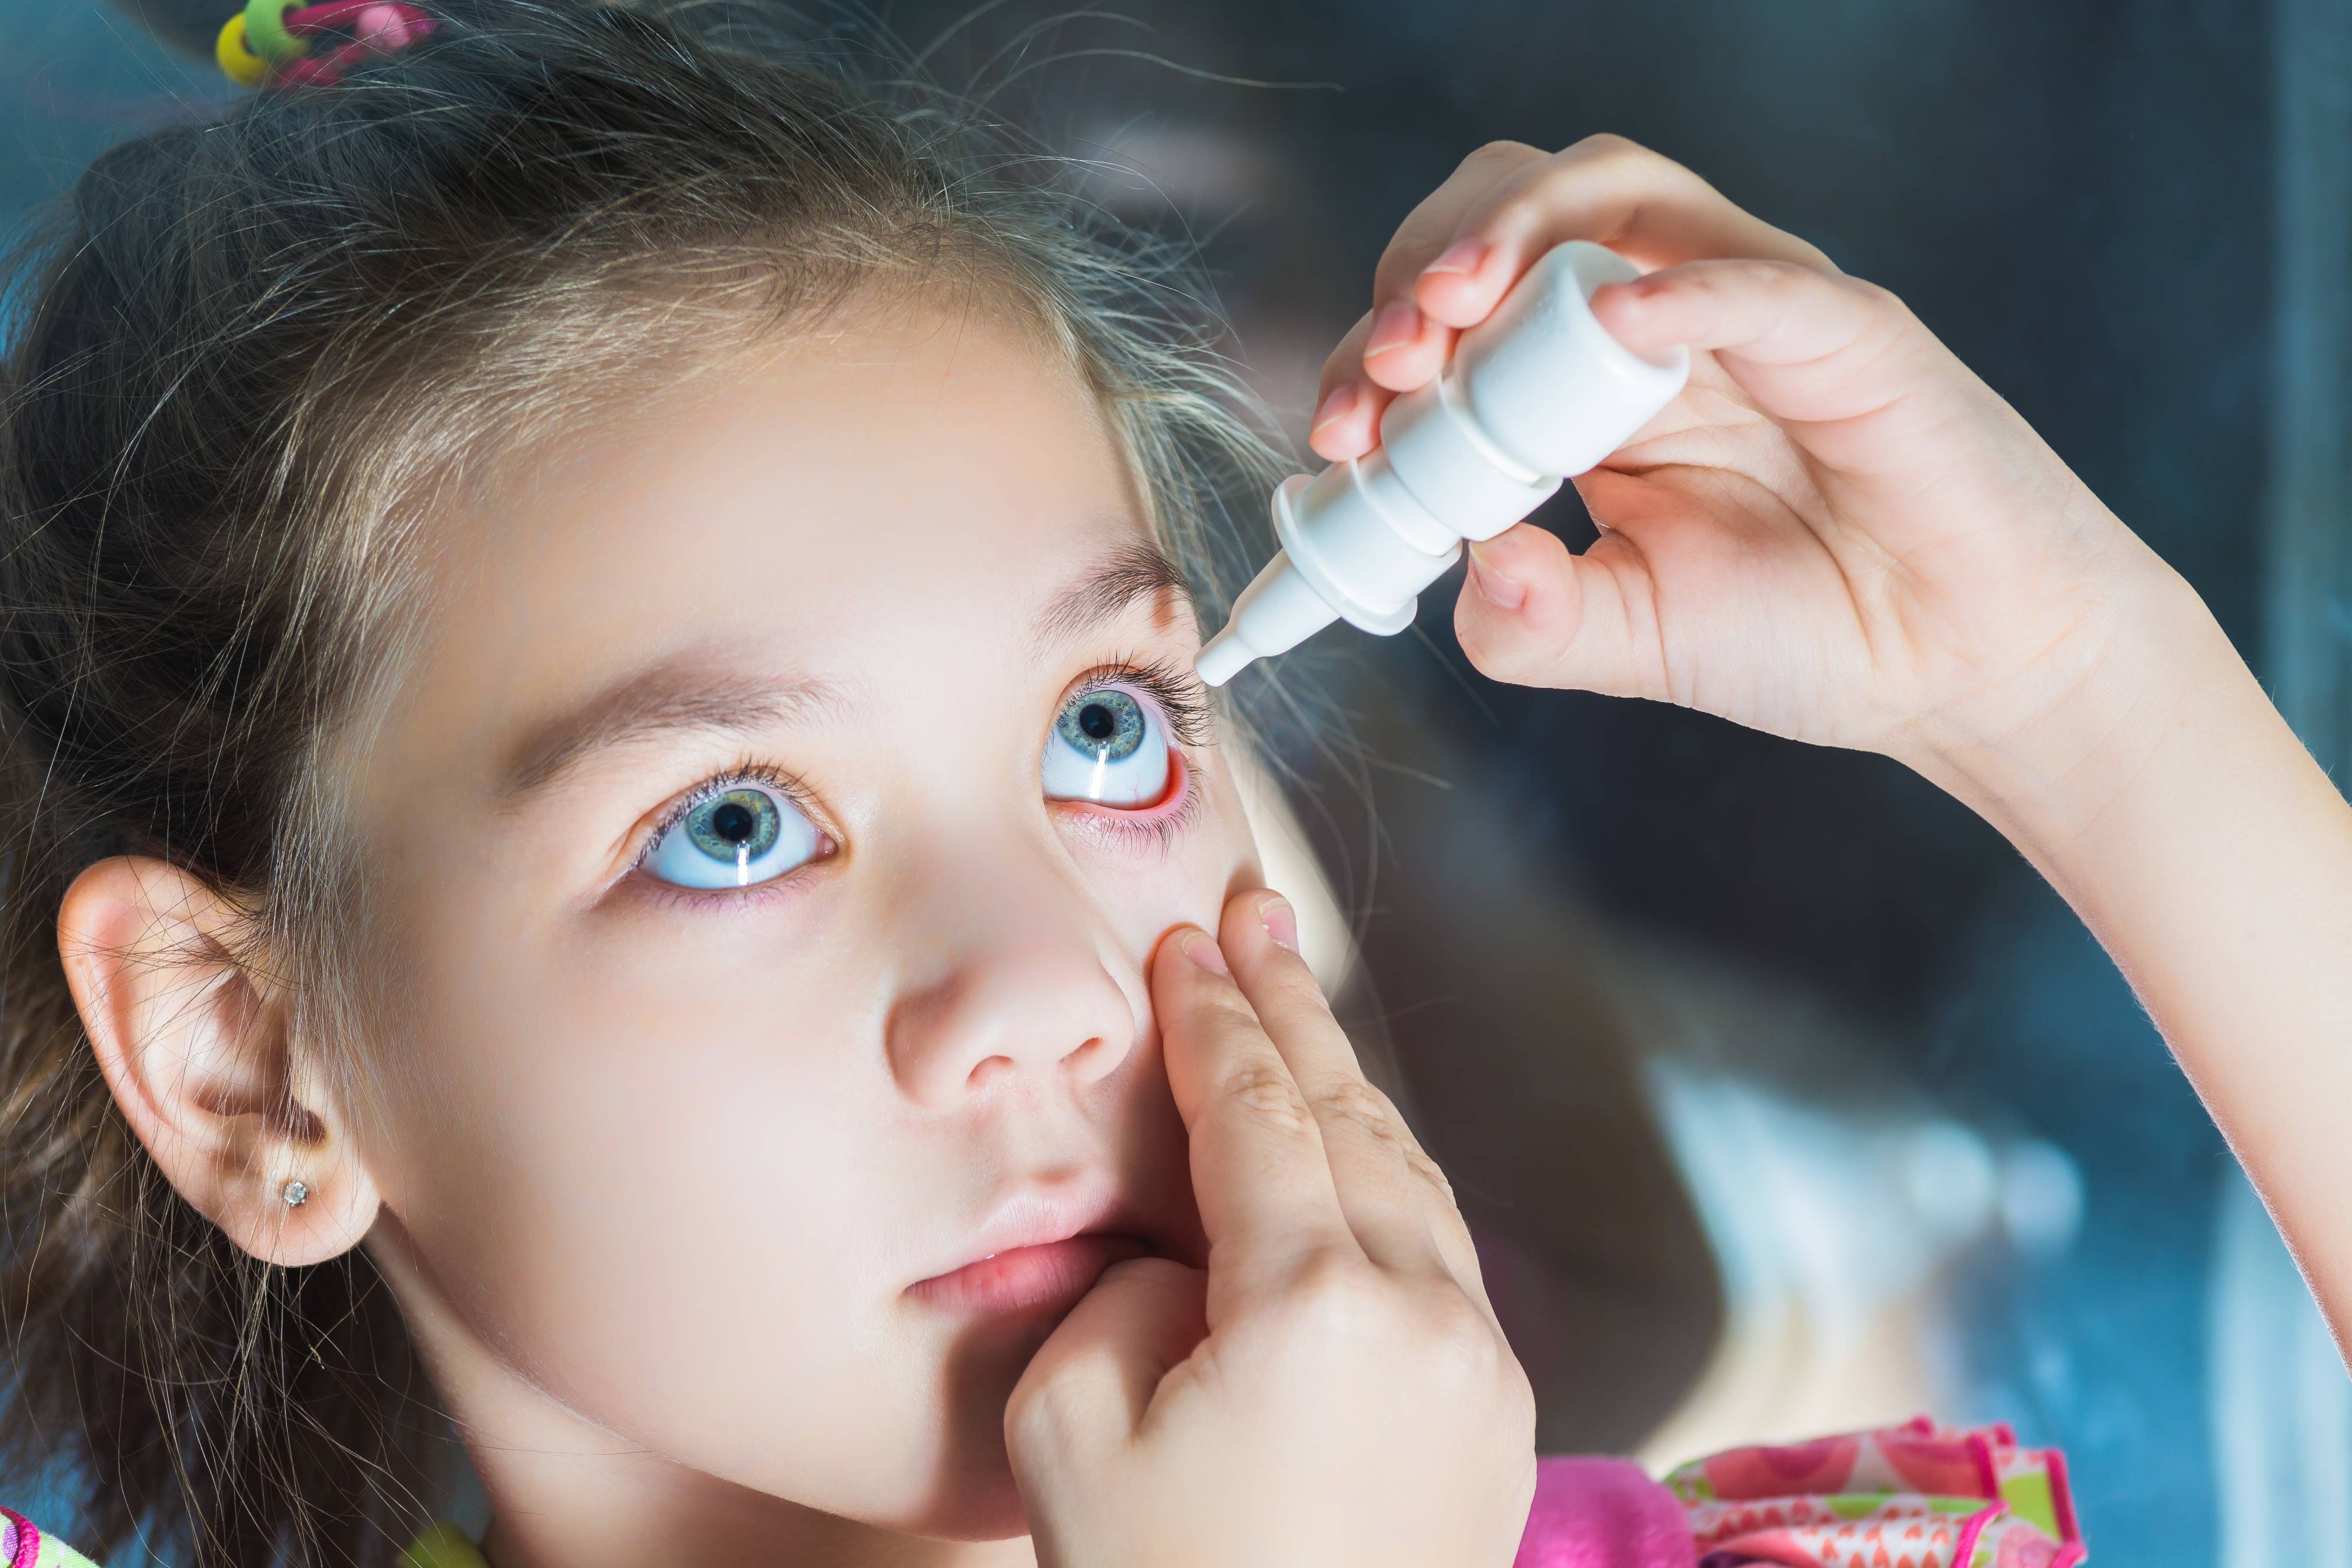 Atropine Eye Drops for Myopia in Children